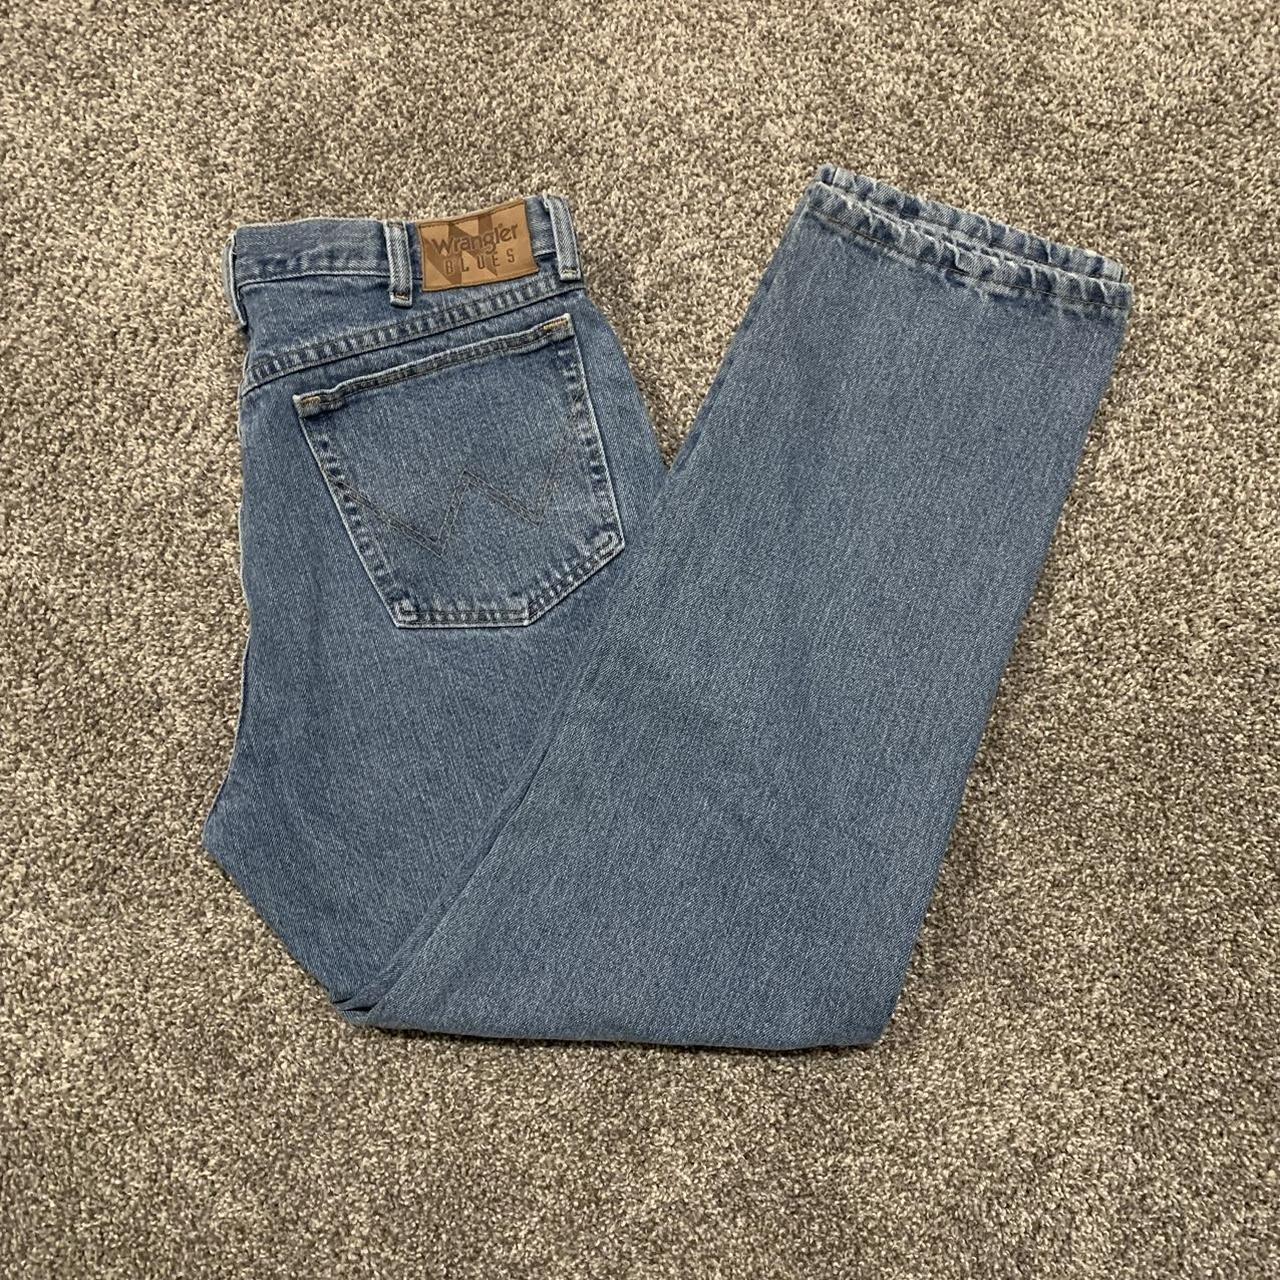 Wrangler Men's Blue Jeans (4)